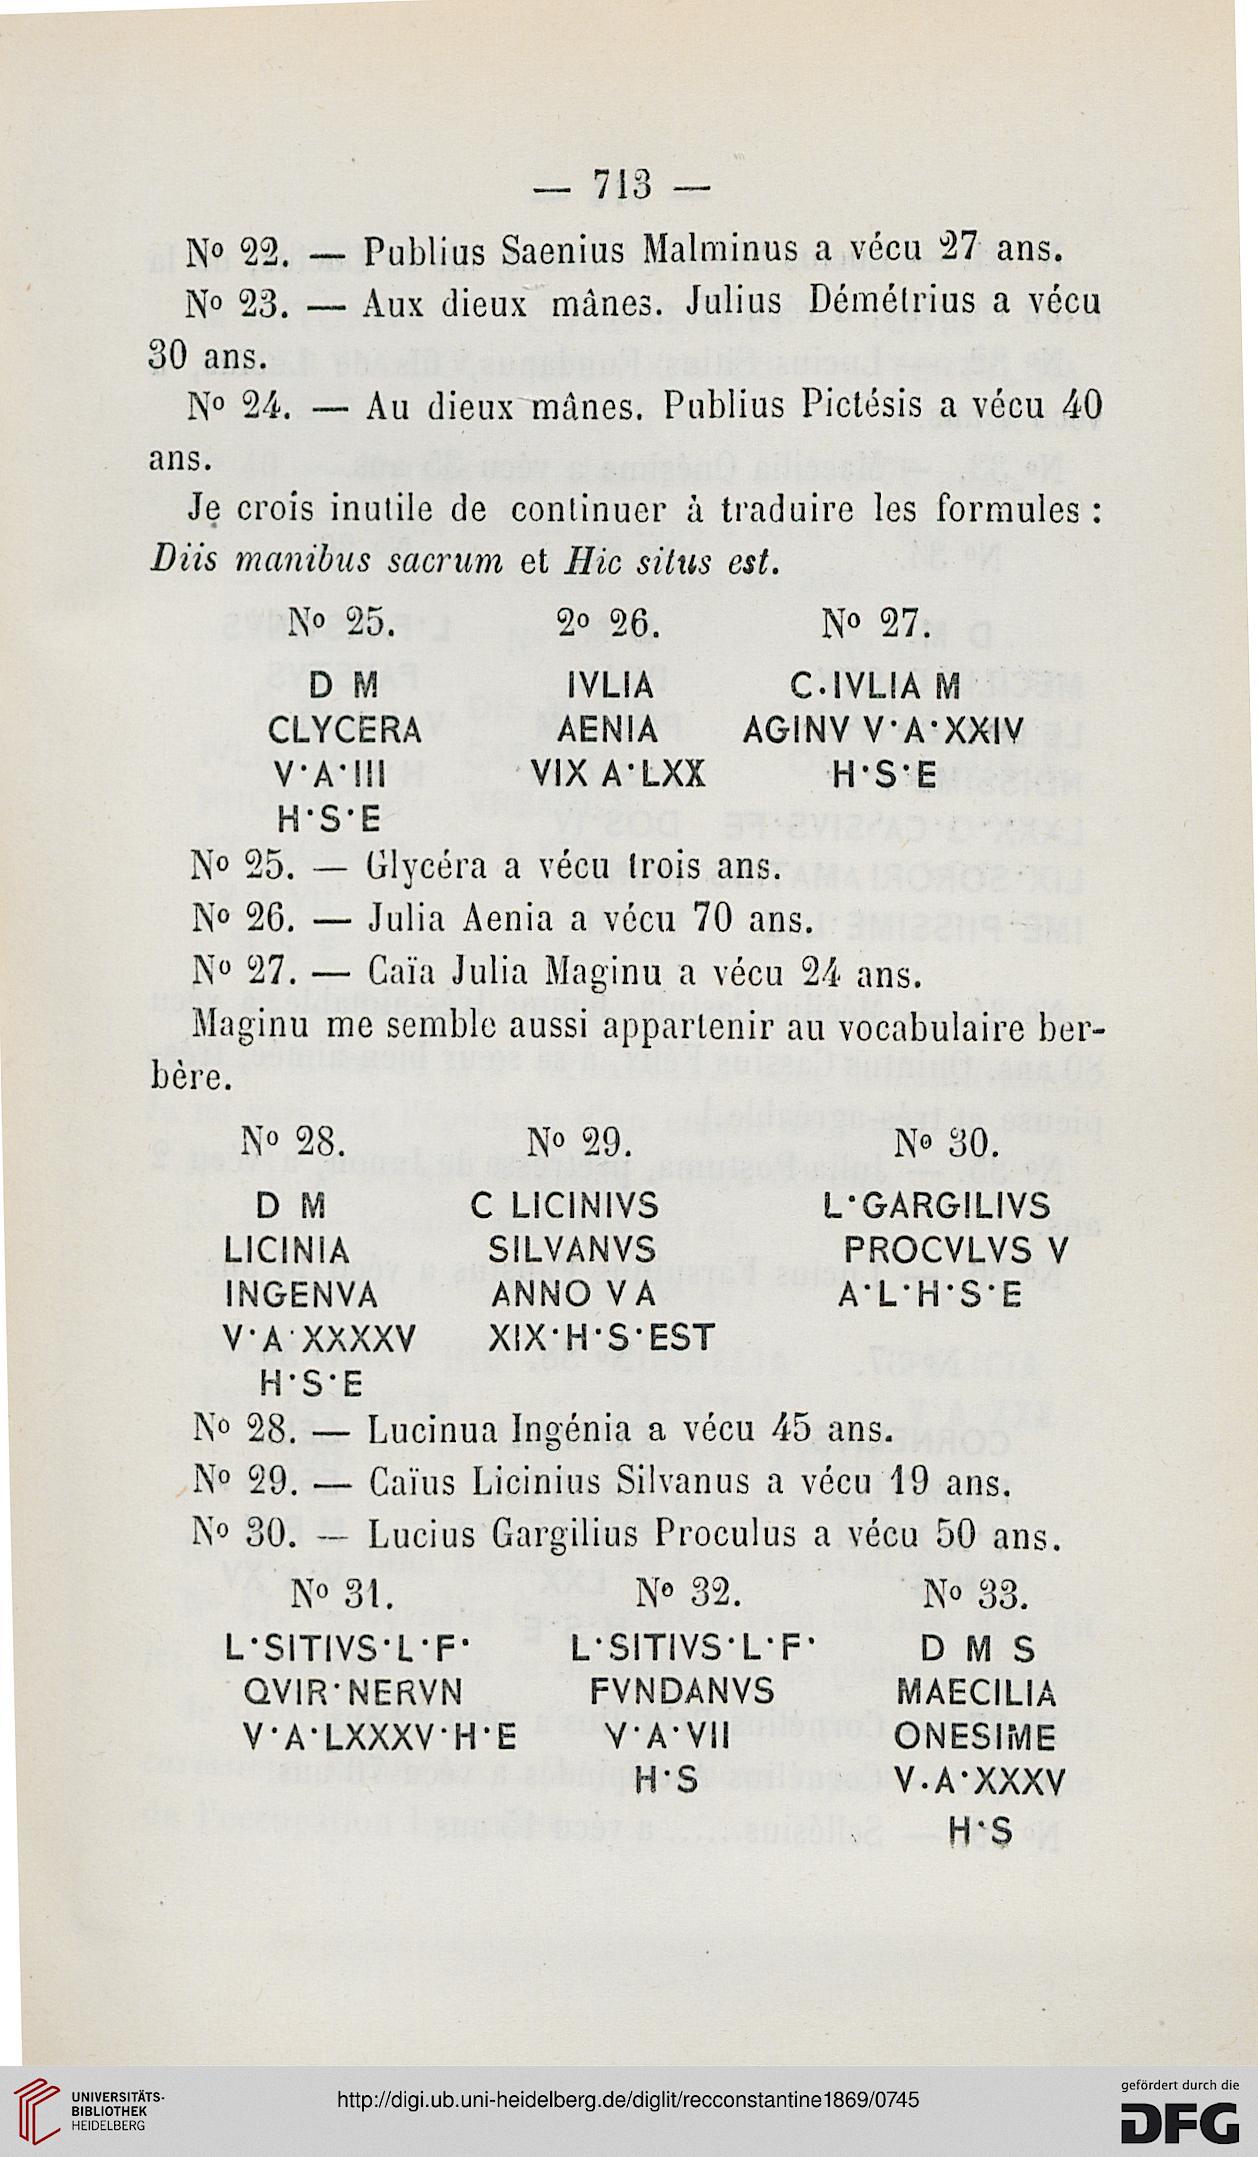 recueil des notices et memoires de la societe archeologique de la province de constantine ser 2 3 13 1869